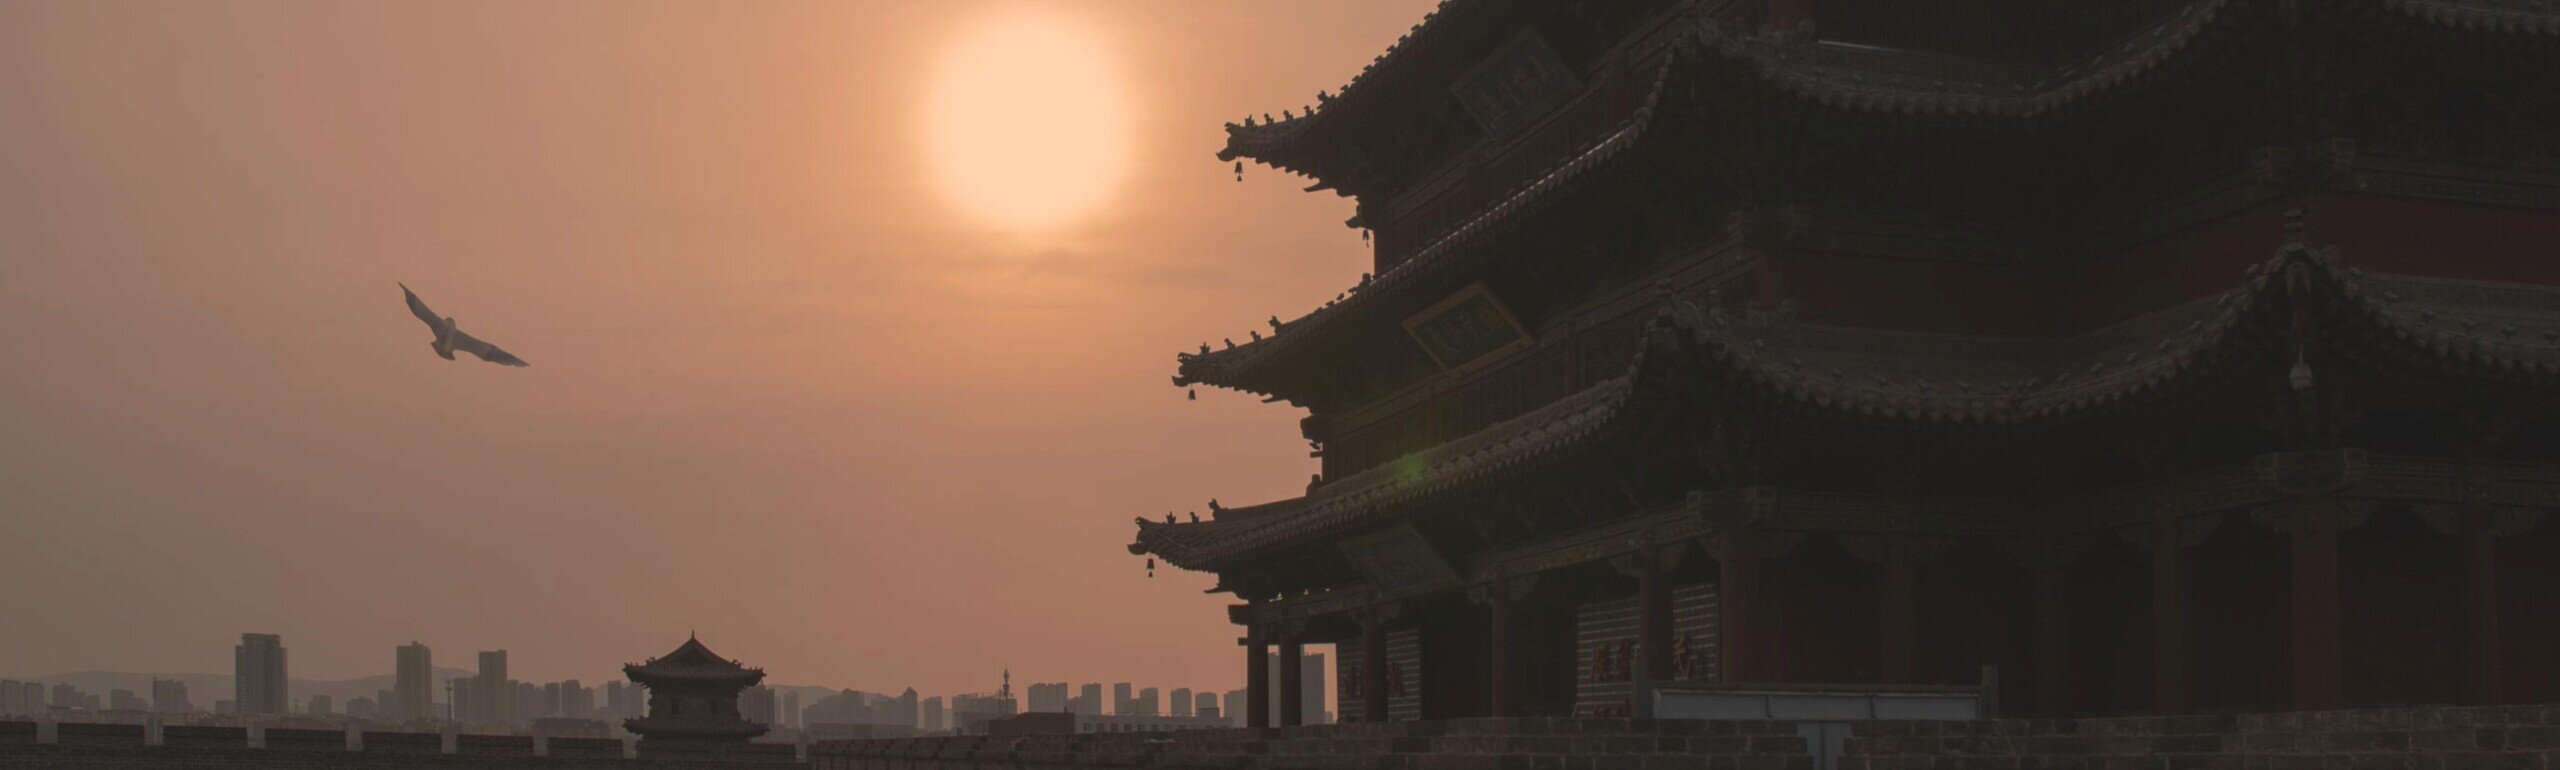 Tramonto con in controluce una pagoda e sullo sfondo la città di Datong-in cielo si staglia in volo un rapace.